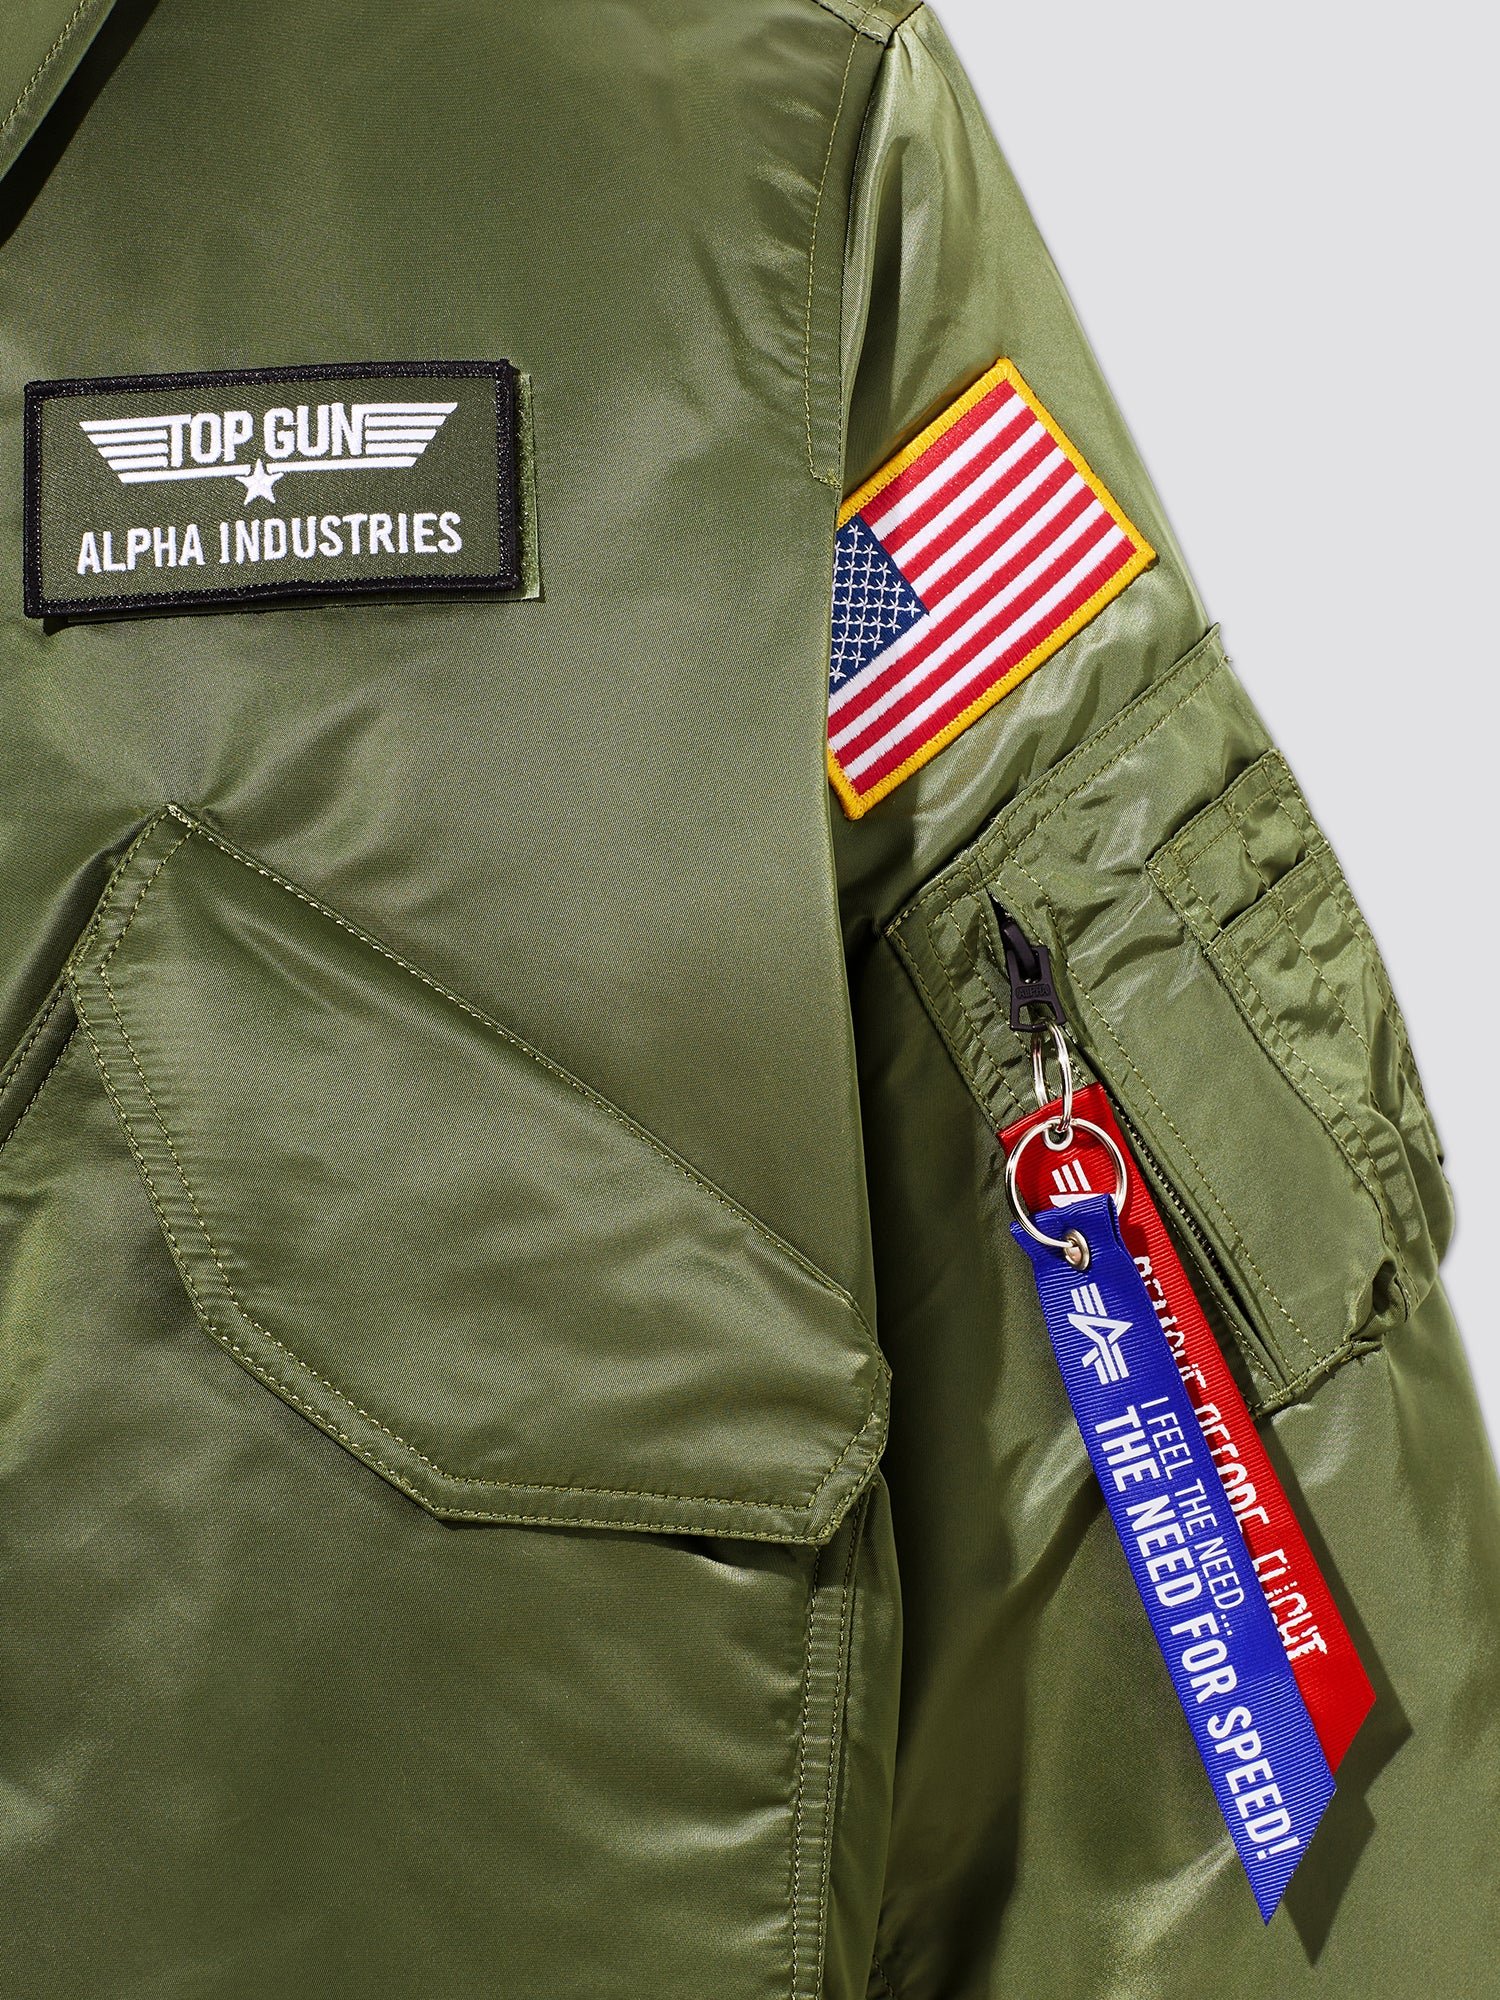 alpha-x-top-gun-cwu-45p-flight-jacket-outerwear-388079_2x.jpeg